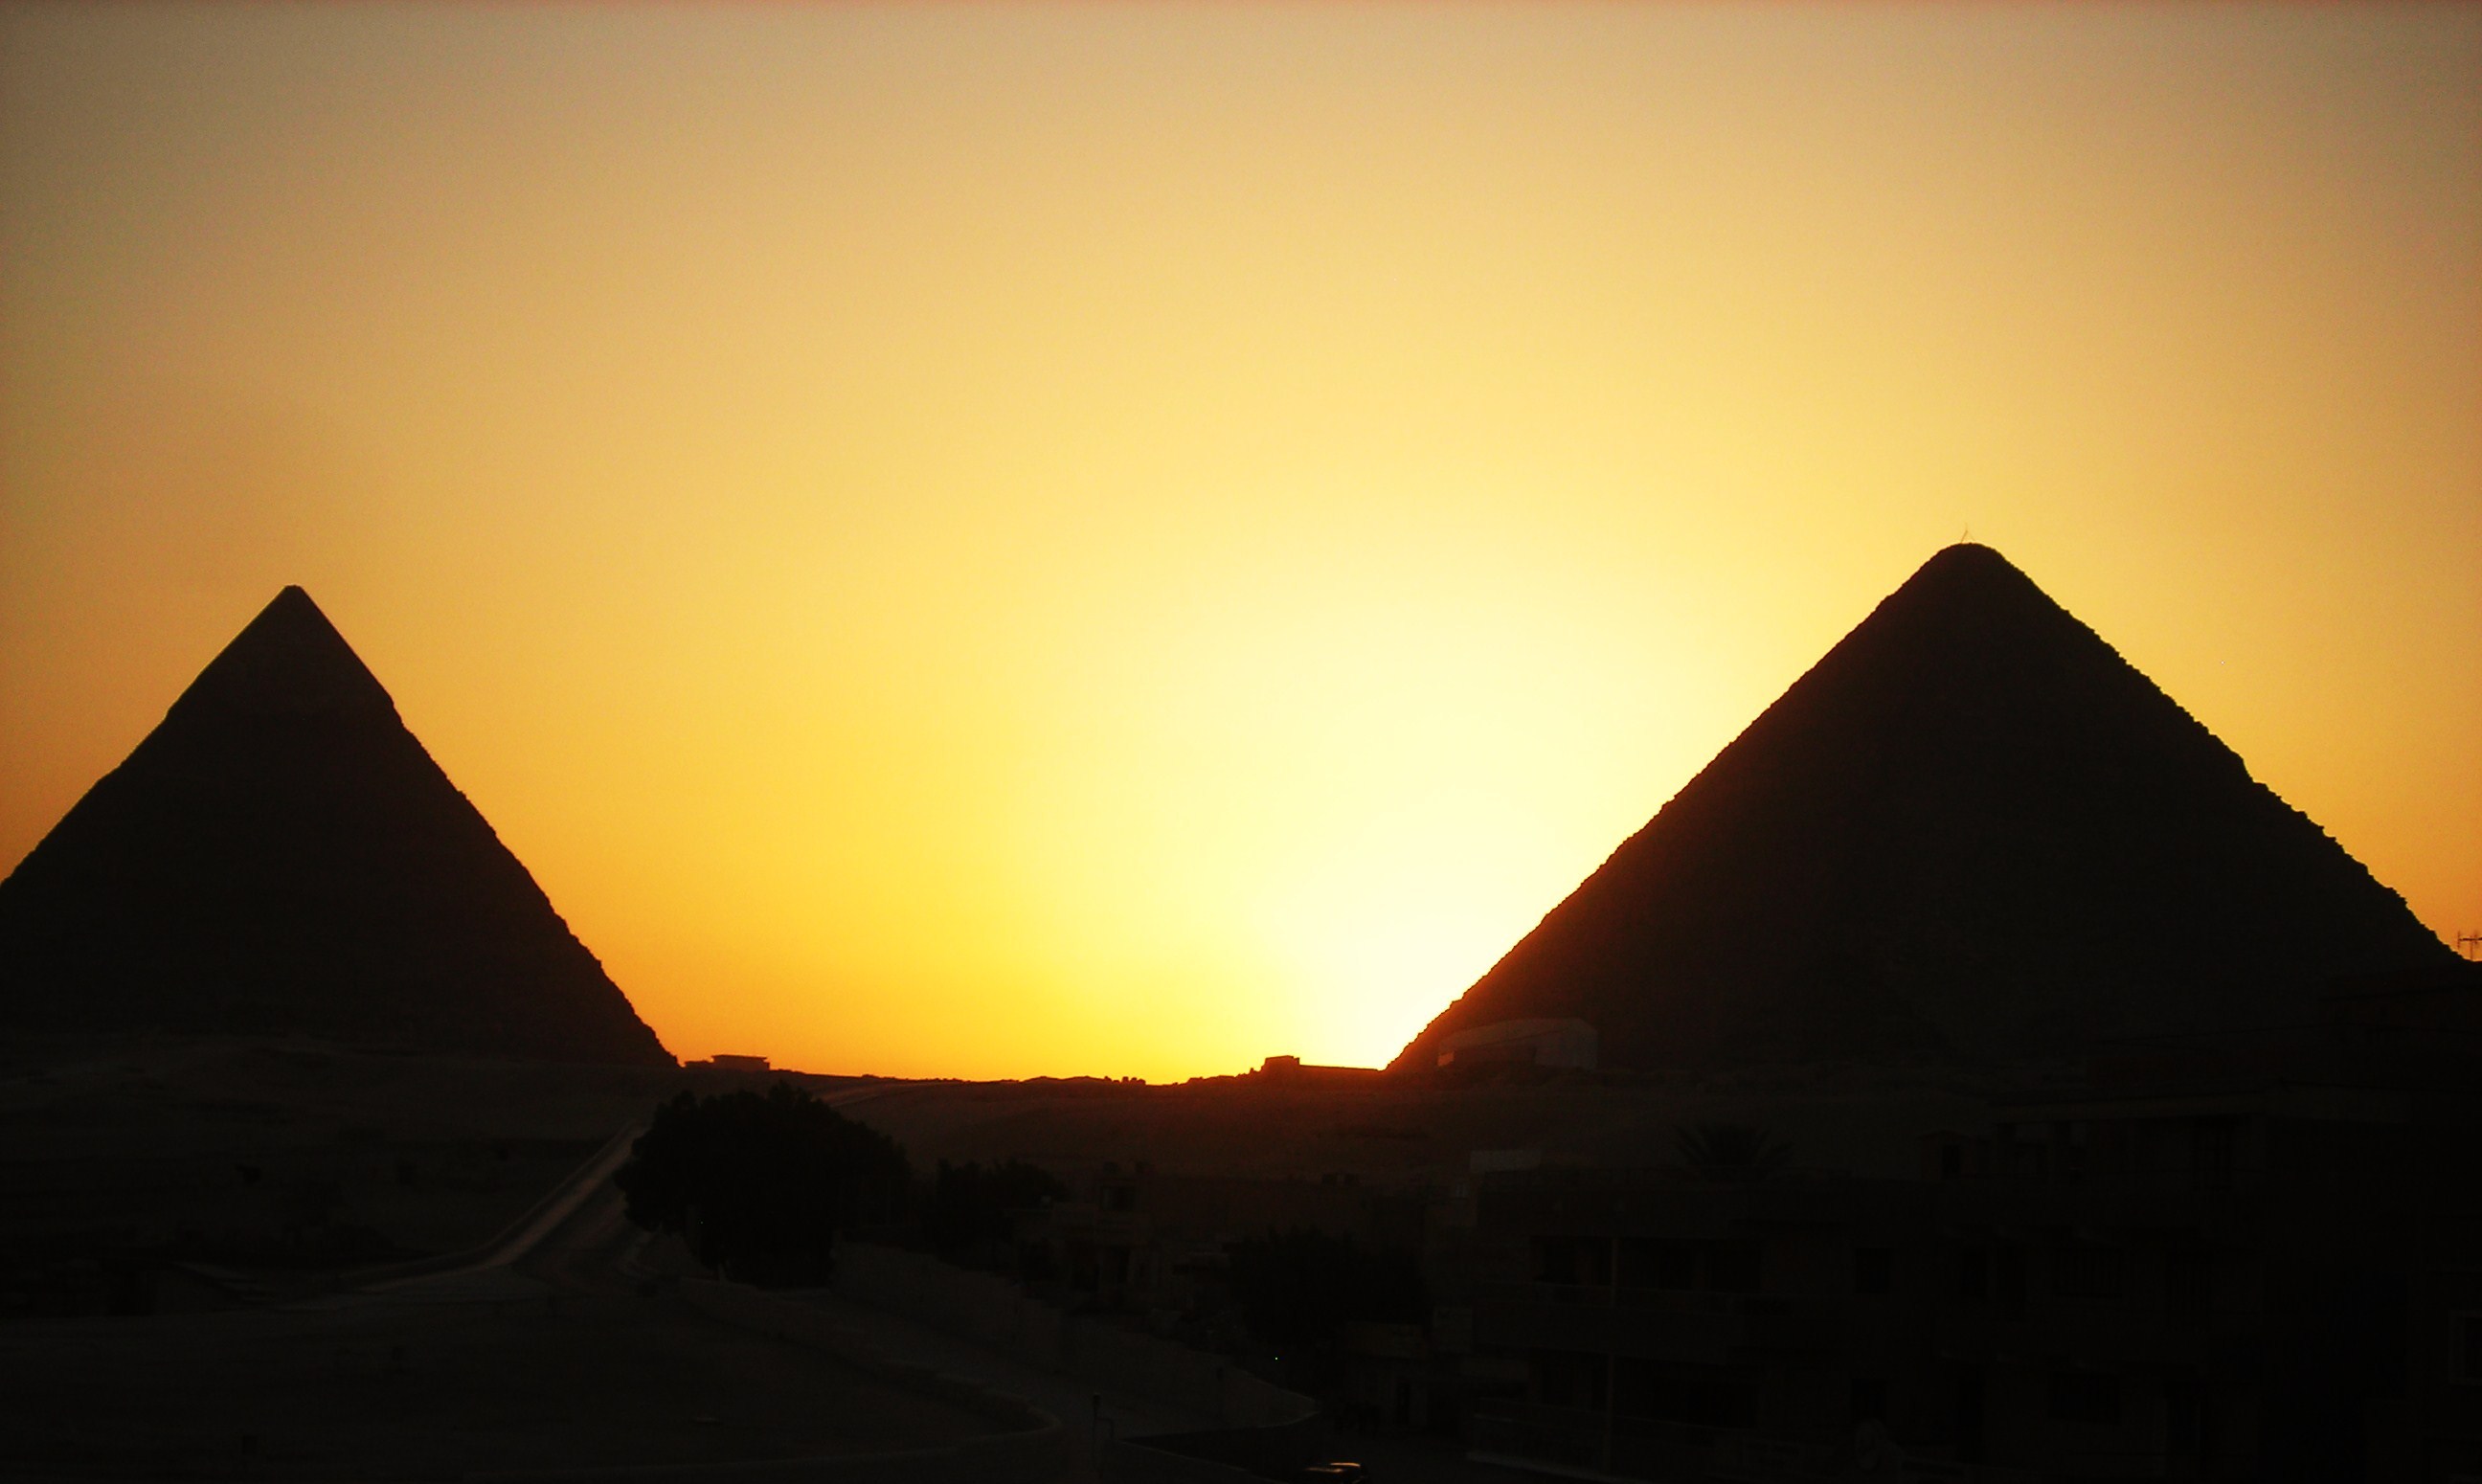 immagini da parati hd,piramide,cielo,monumento,tramonto,paesaggio